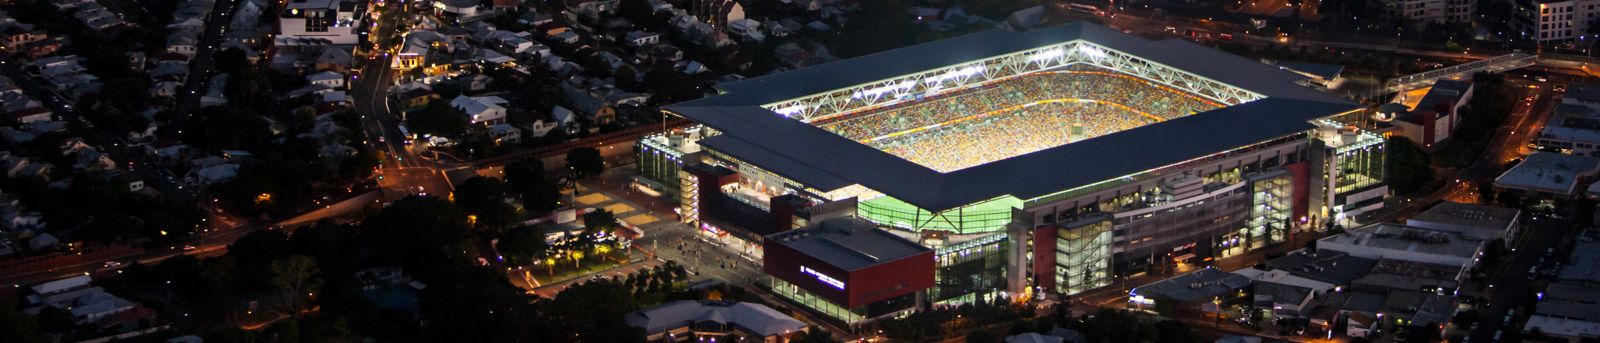 Birdeye view of suncorp stadium at night with surrounding suburbs